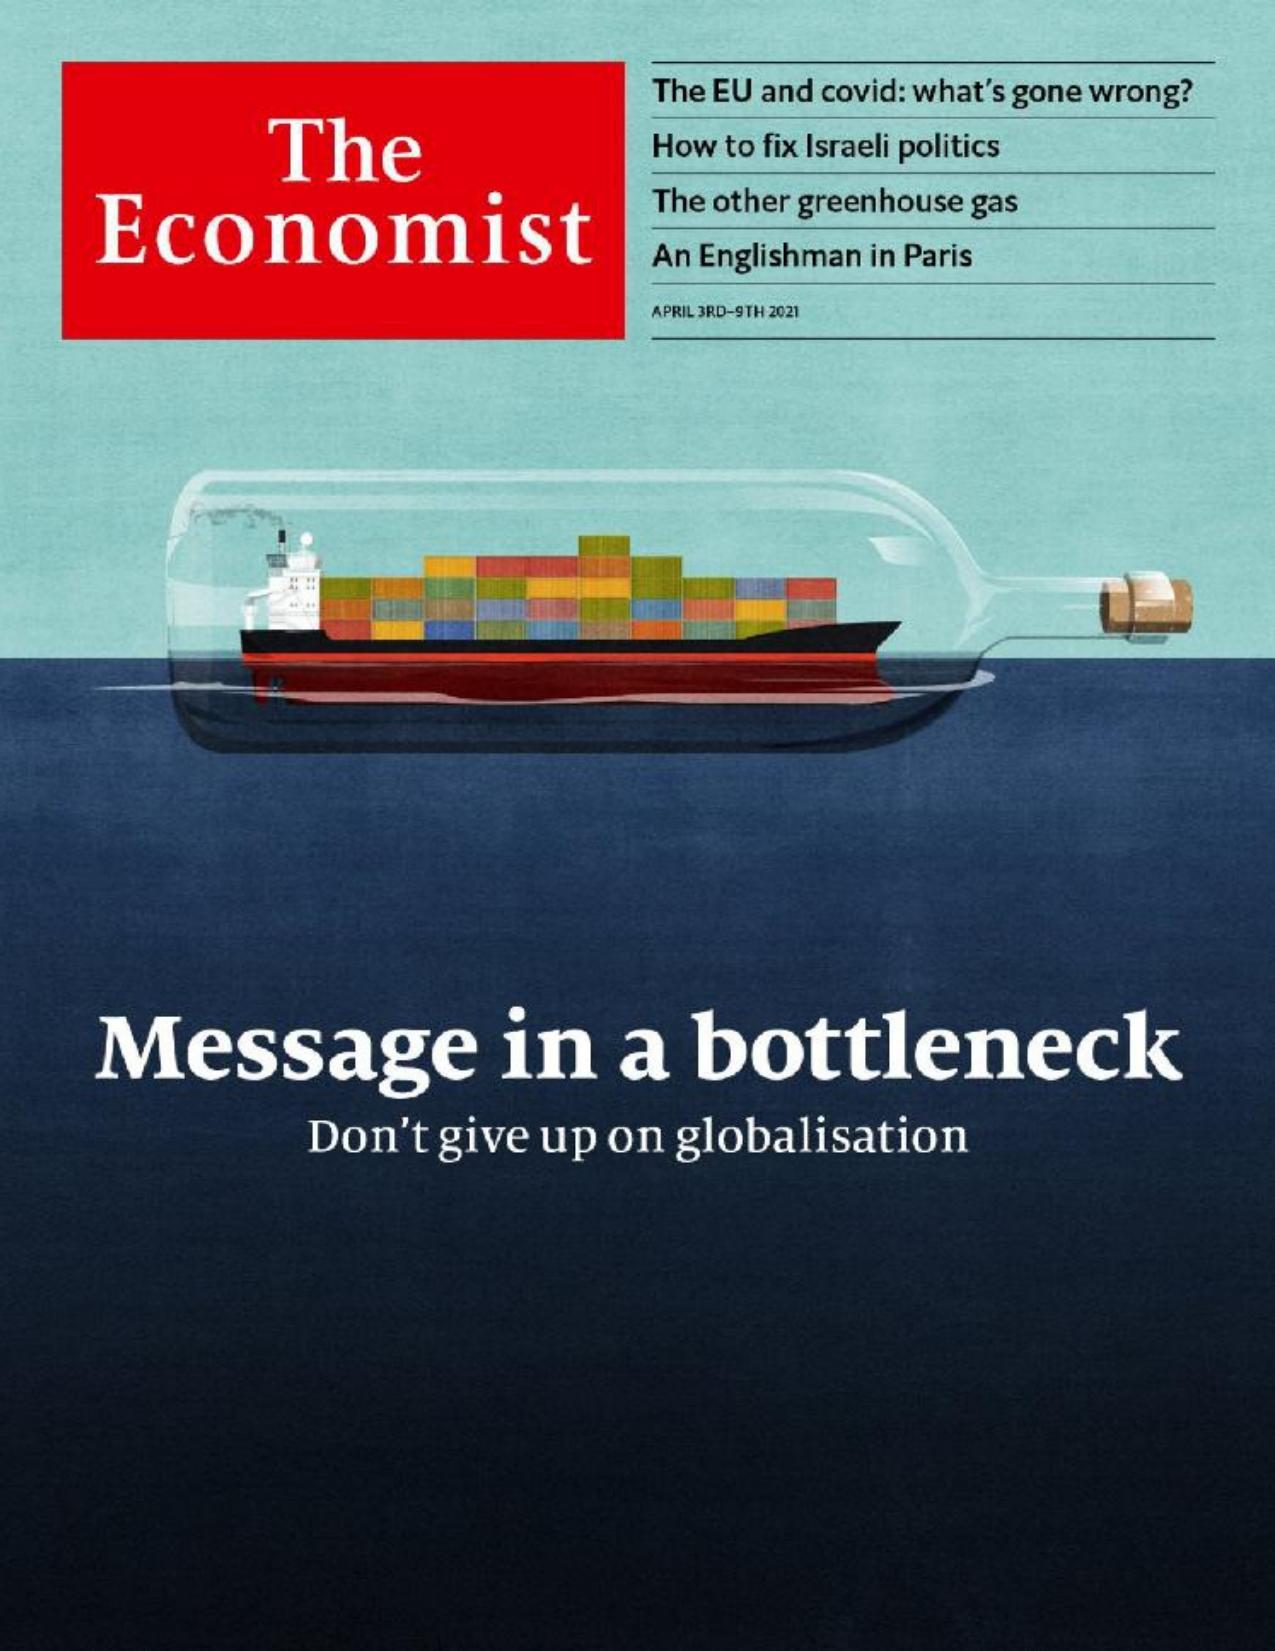 The Economist (20210403) by calibre